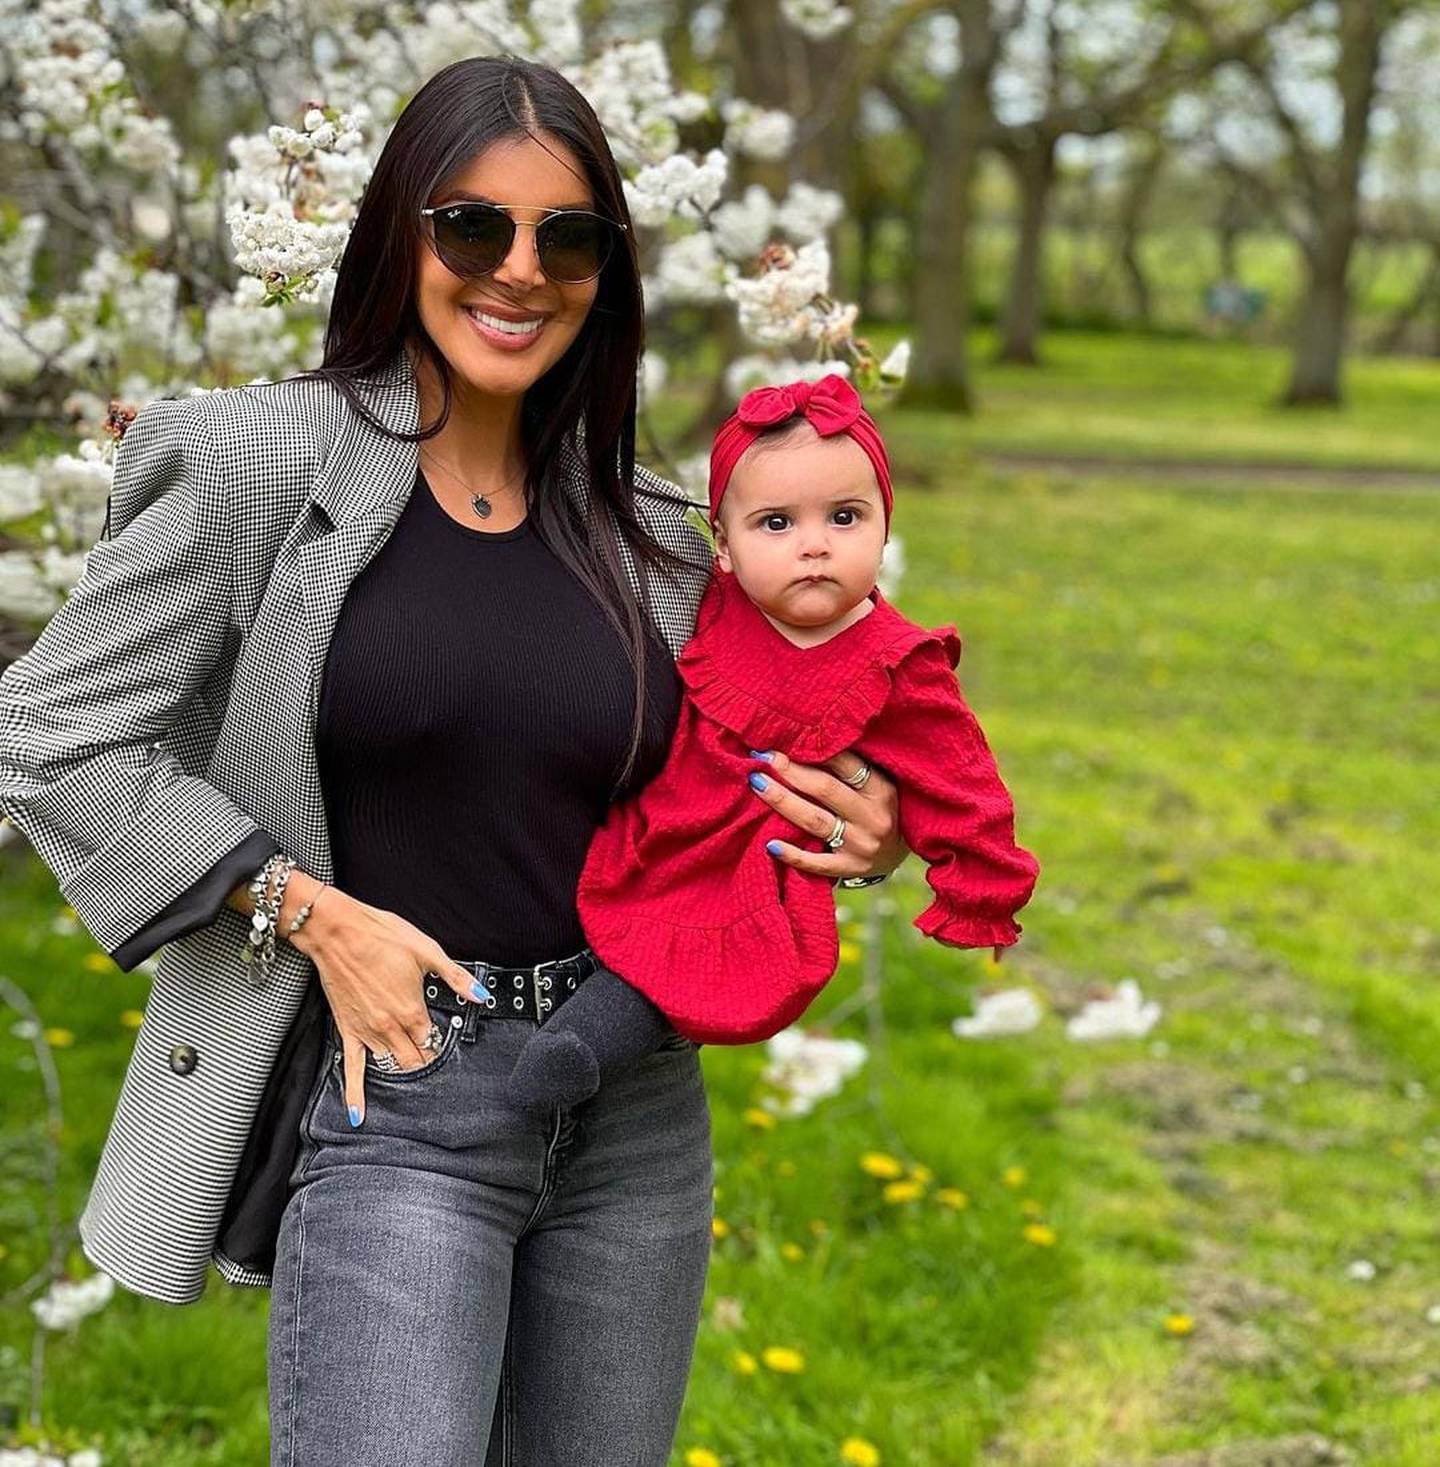 La expresentadora ama cada minuto que pasa con su bebita Julia, de 8 meses. Instagram.